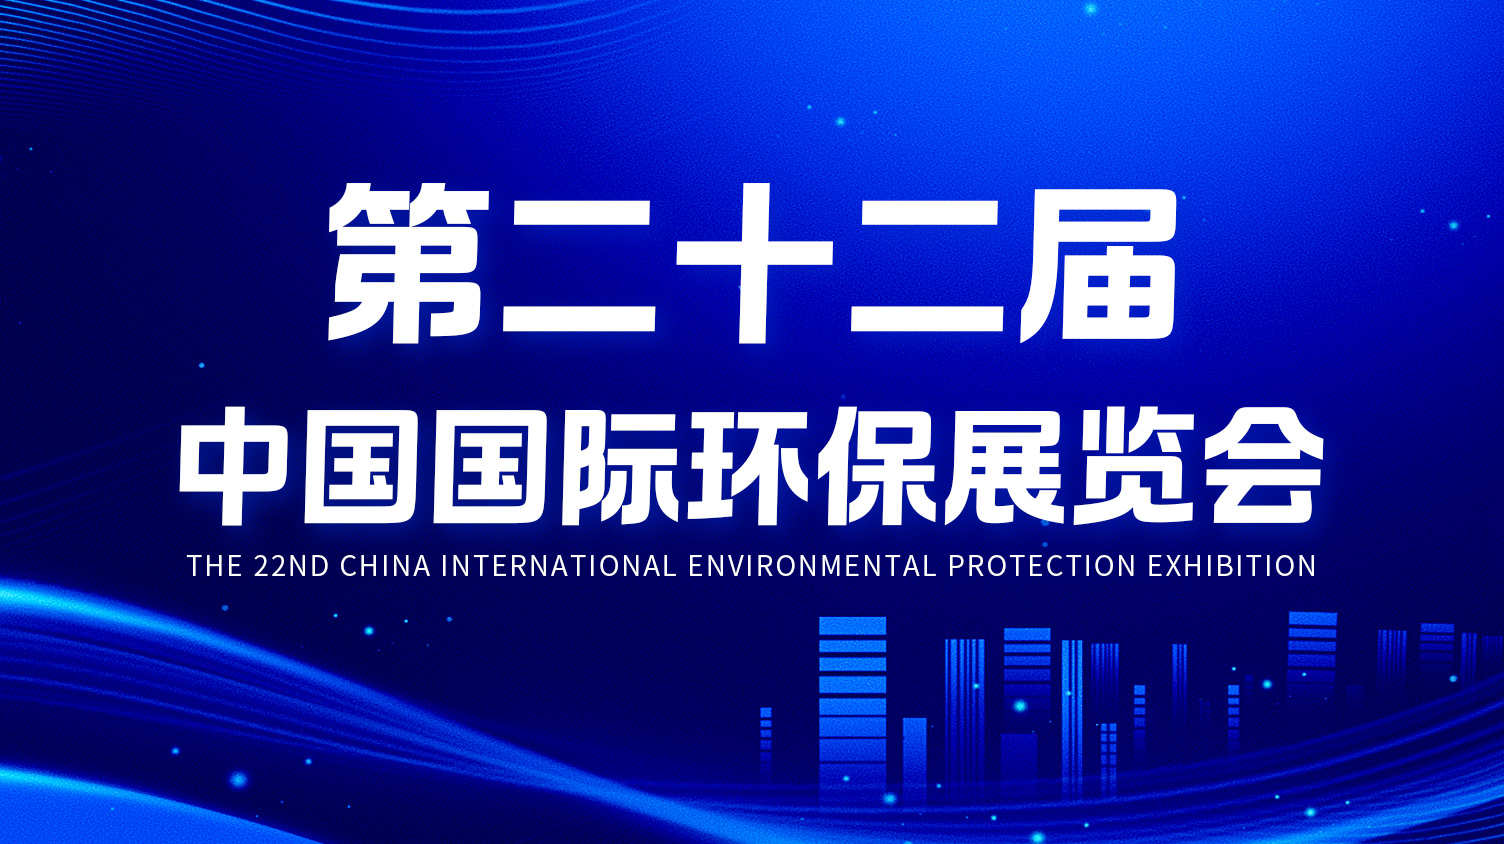 一諾環境精彩亮相第二十二屆中國國際環保展覽會